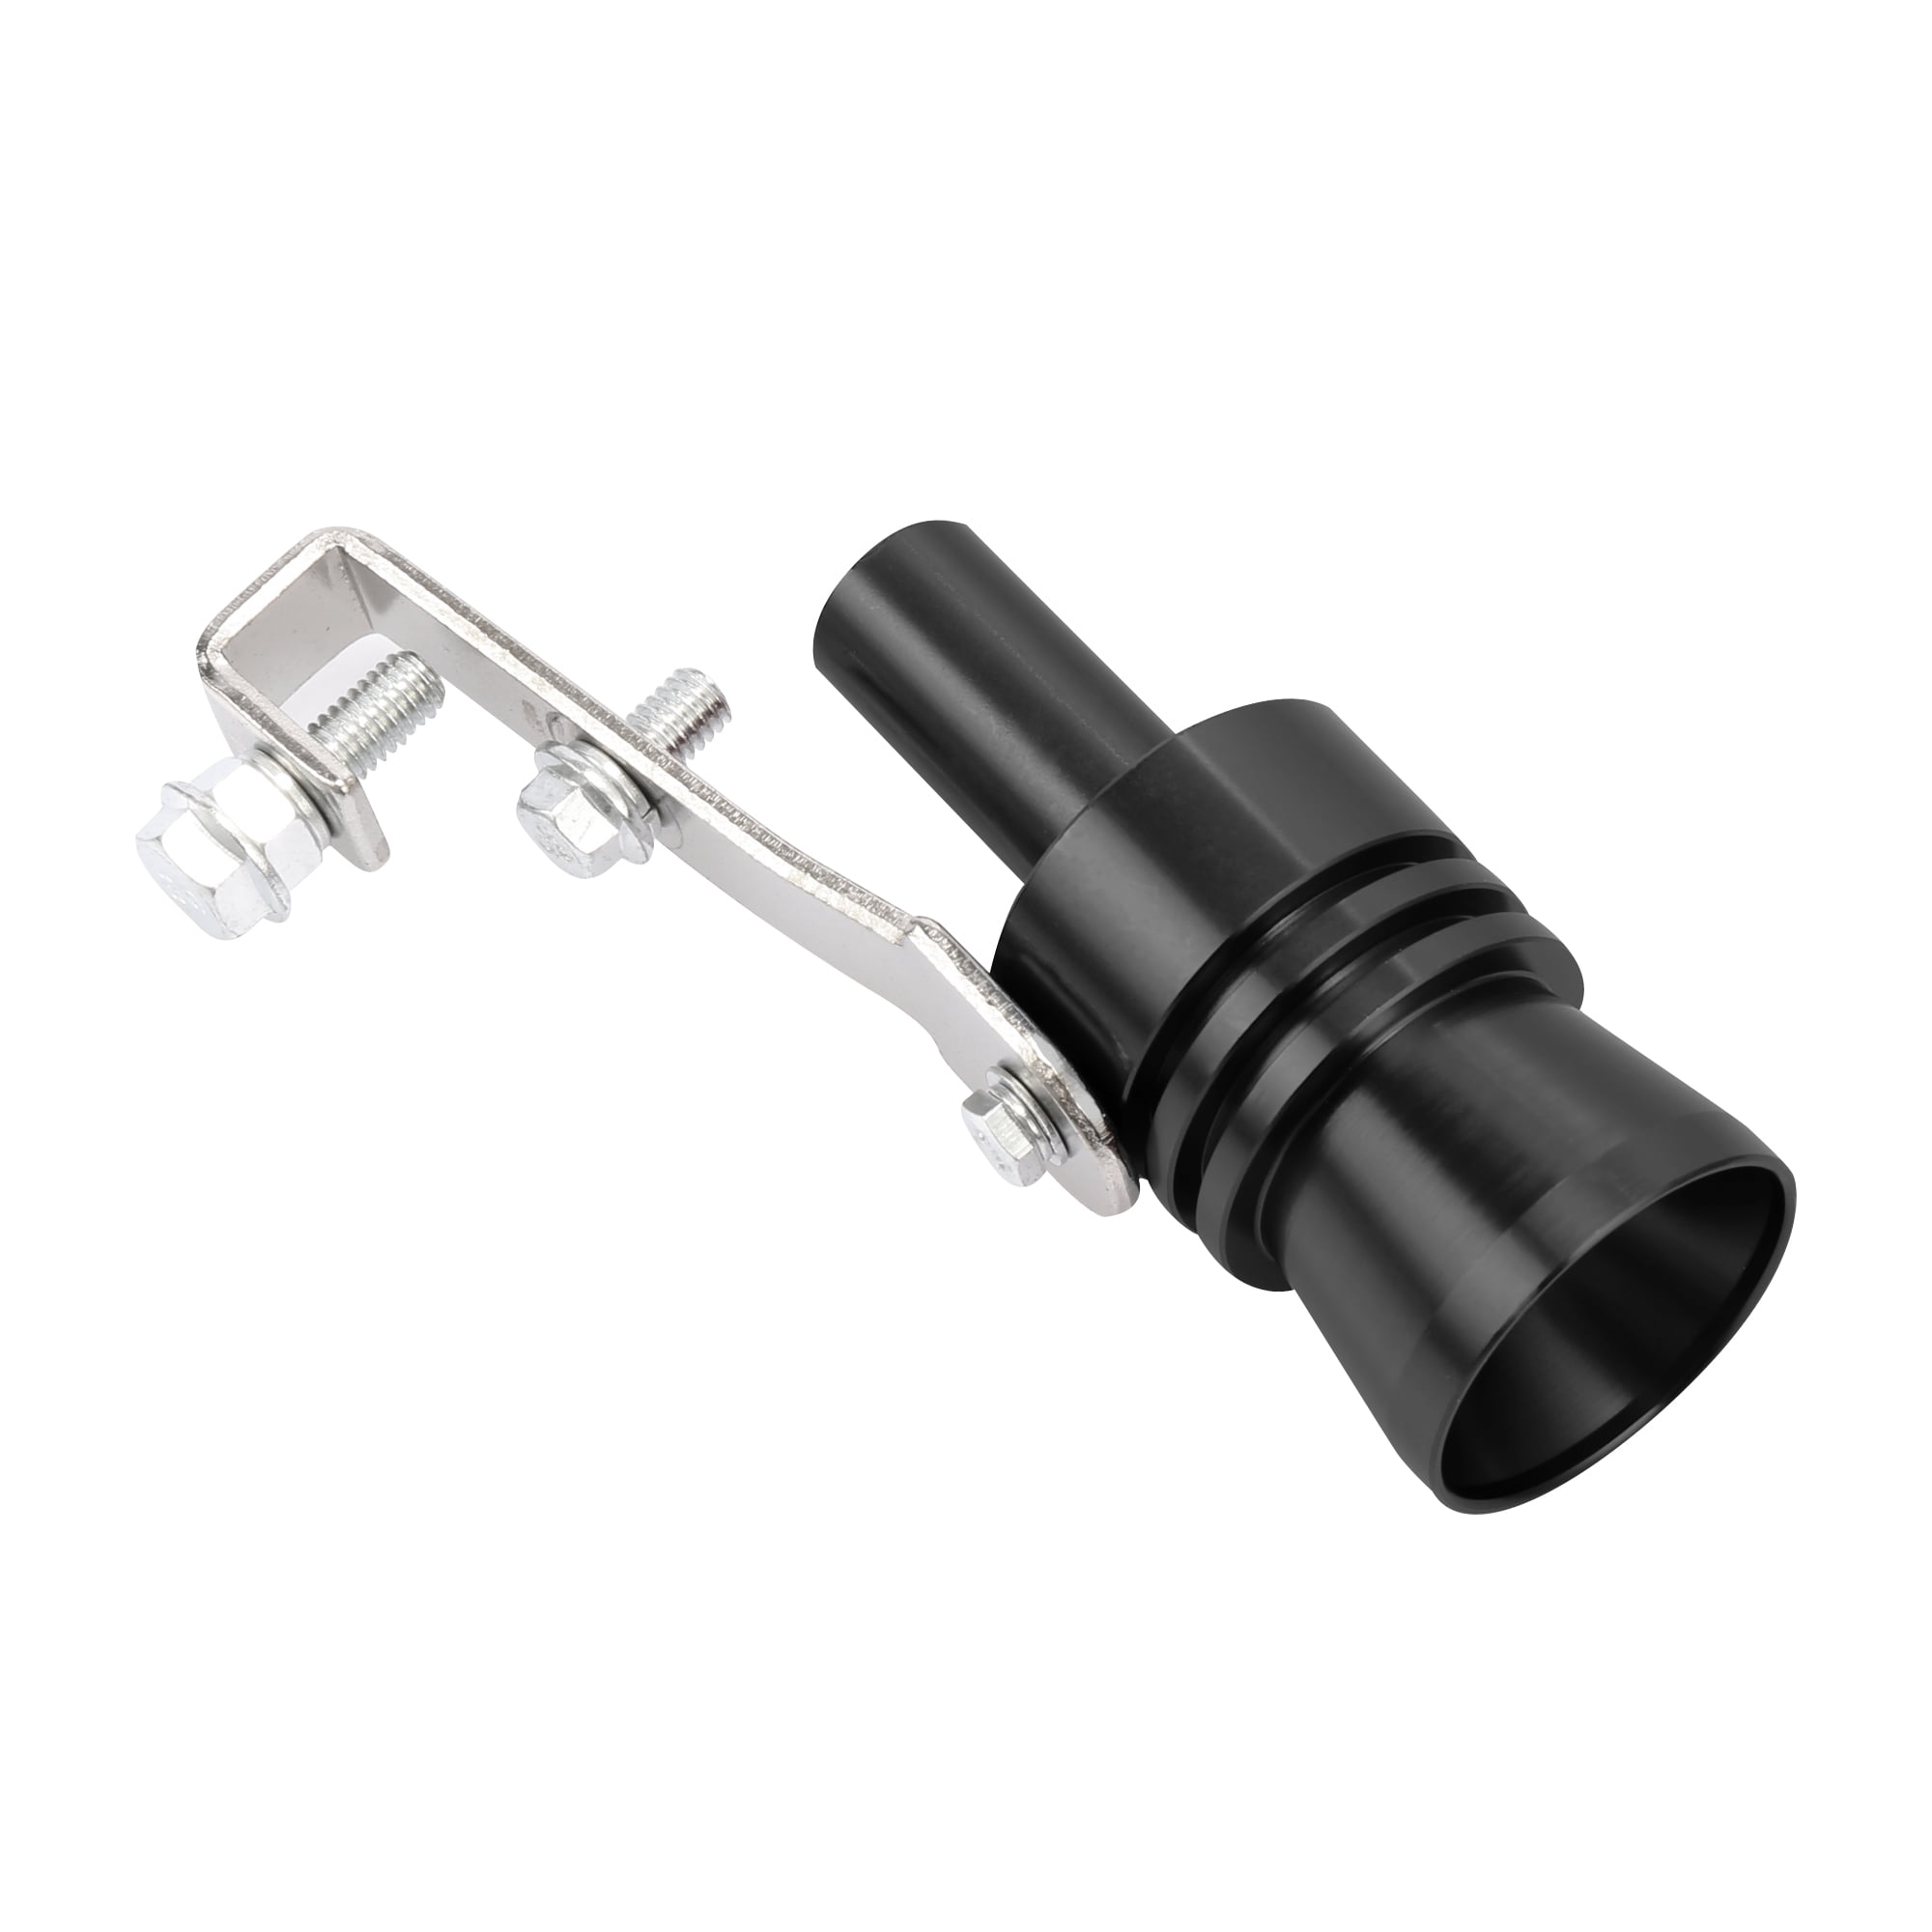 Unique Bargains 2pcs XL Size Black Universal Turbo Sound Whistle